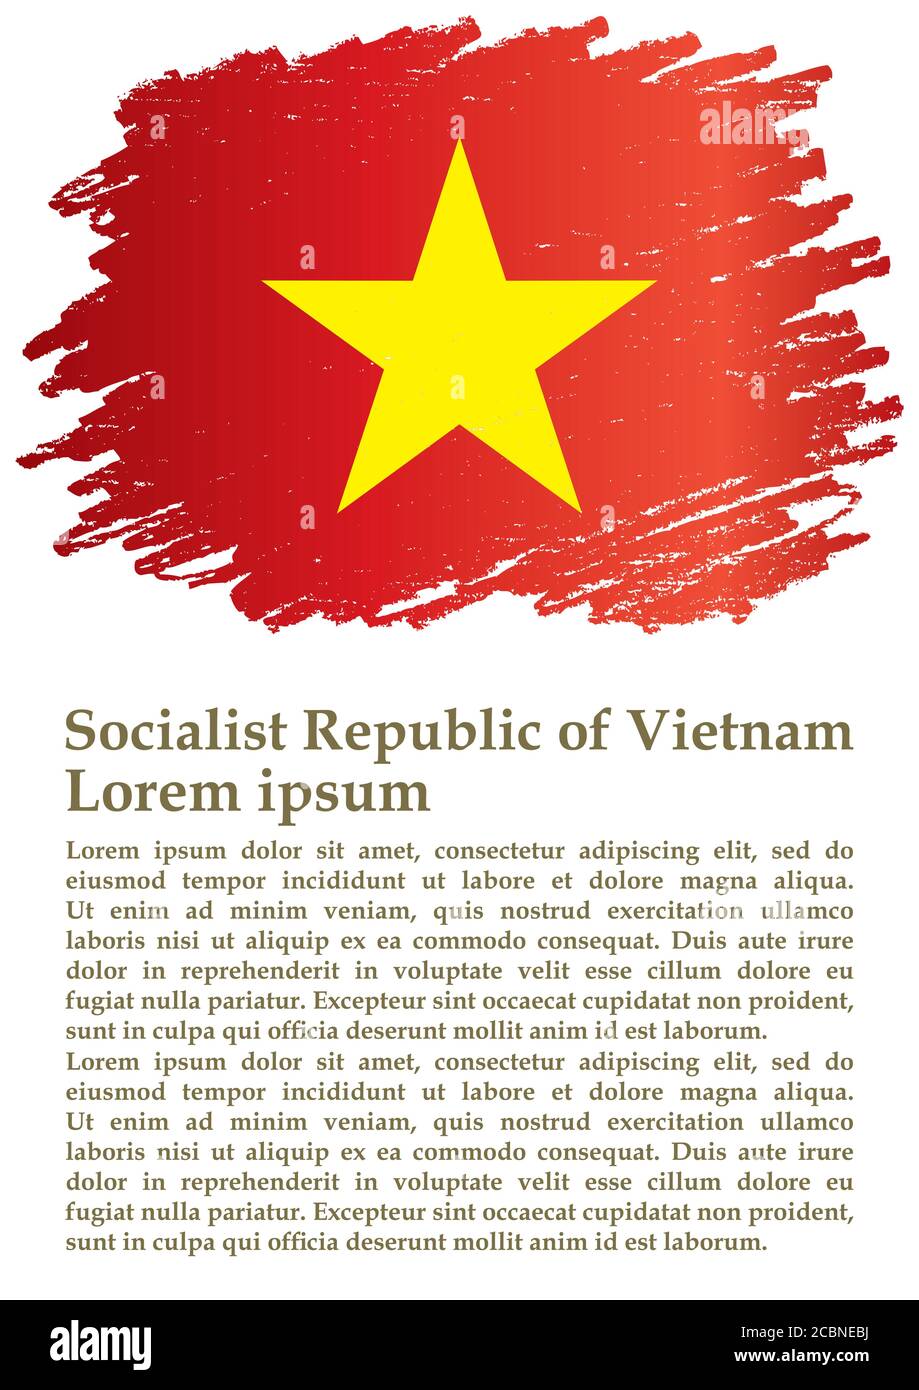 Flagge Vietnams, Sozialistische Republik Vietnam, Vorlage für Preisgestaltung, ein offizielles Dokument mit der Flagge der Sozialistischen Republik Vietnam. Stock Vektor